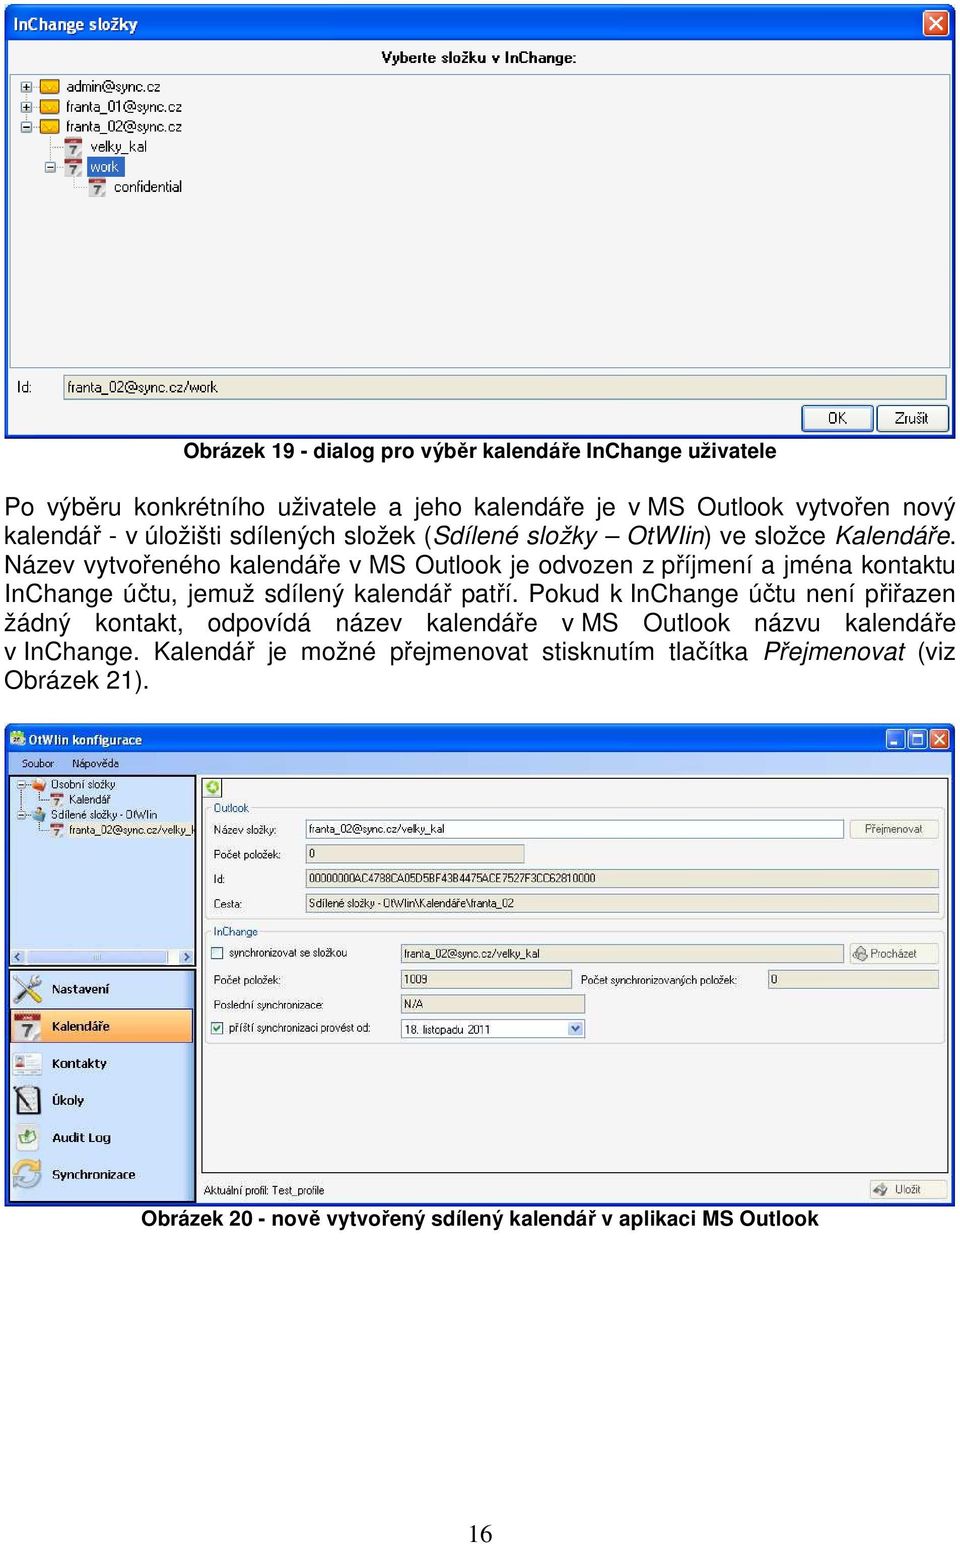 Název vytvořeného kalendáře v MS Outlook je odvozen z příjmení a jména kontaktu InChange účtu, jemuž sdílený kalendář patří.